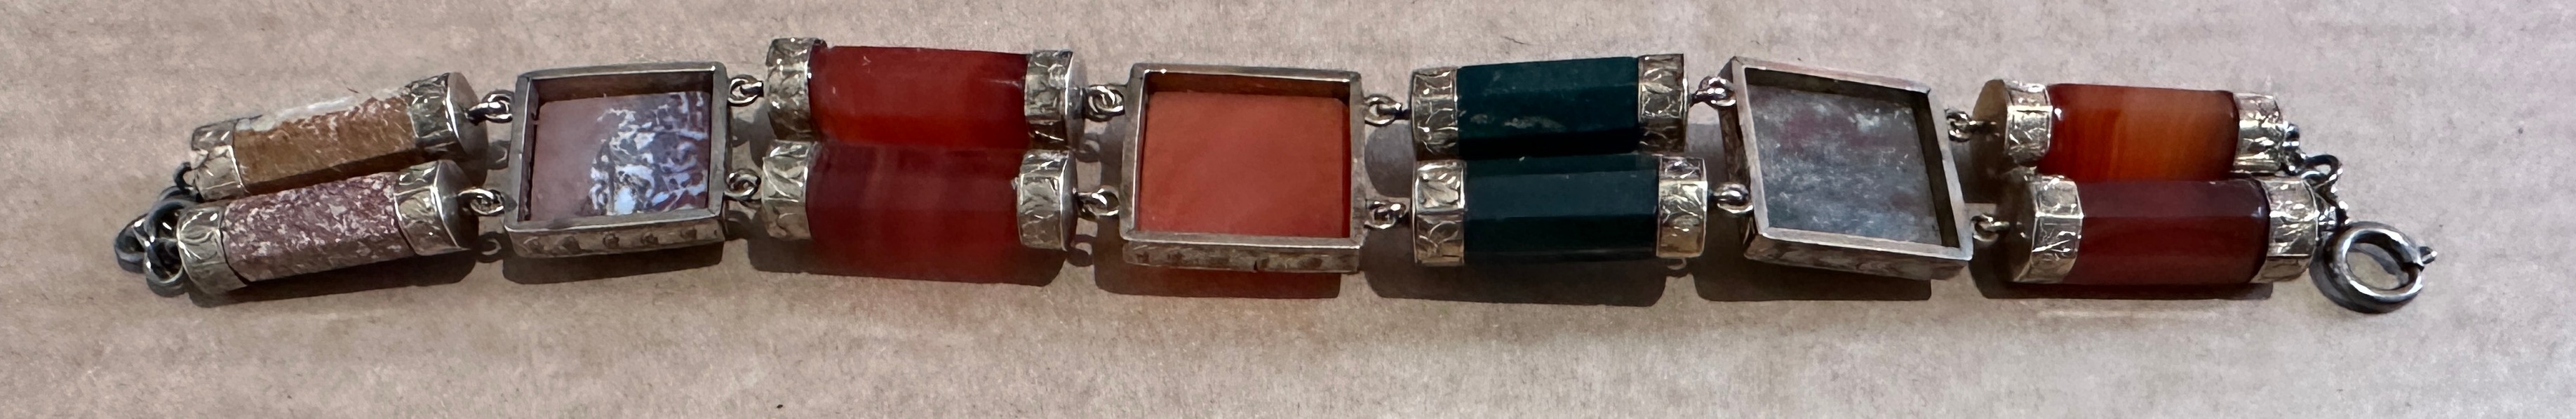 Antique/Vintage Scottish Silver and Hardstone Bracelet approx 18cm long. - Image 7 of 8